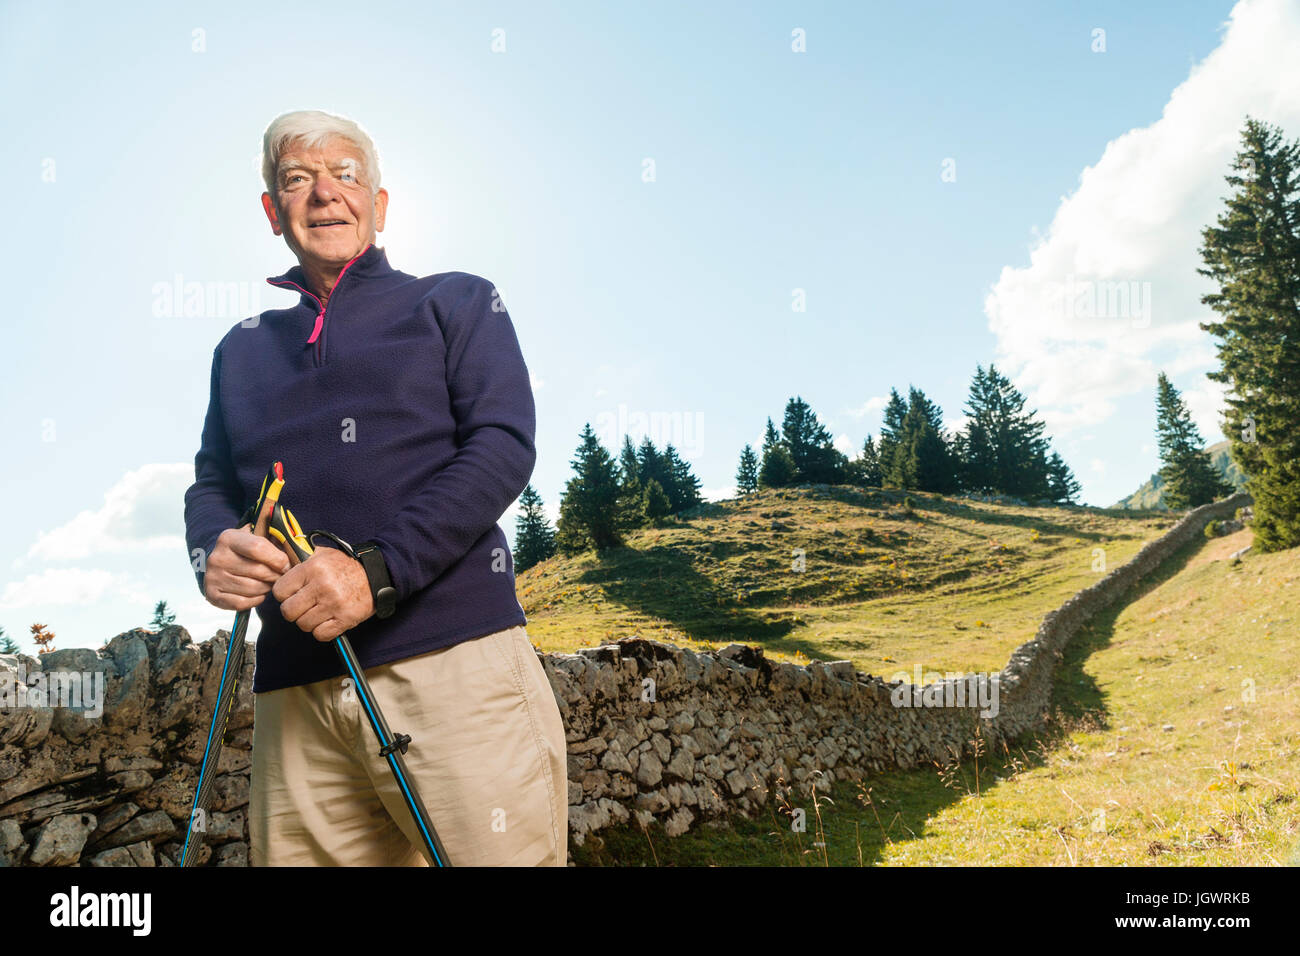 Porträt des älteren Menschen in ländlicher Umgebung, holding, walking Stöcke, Genf, Schweiz, Europa Stockfoto